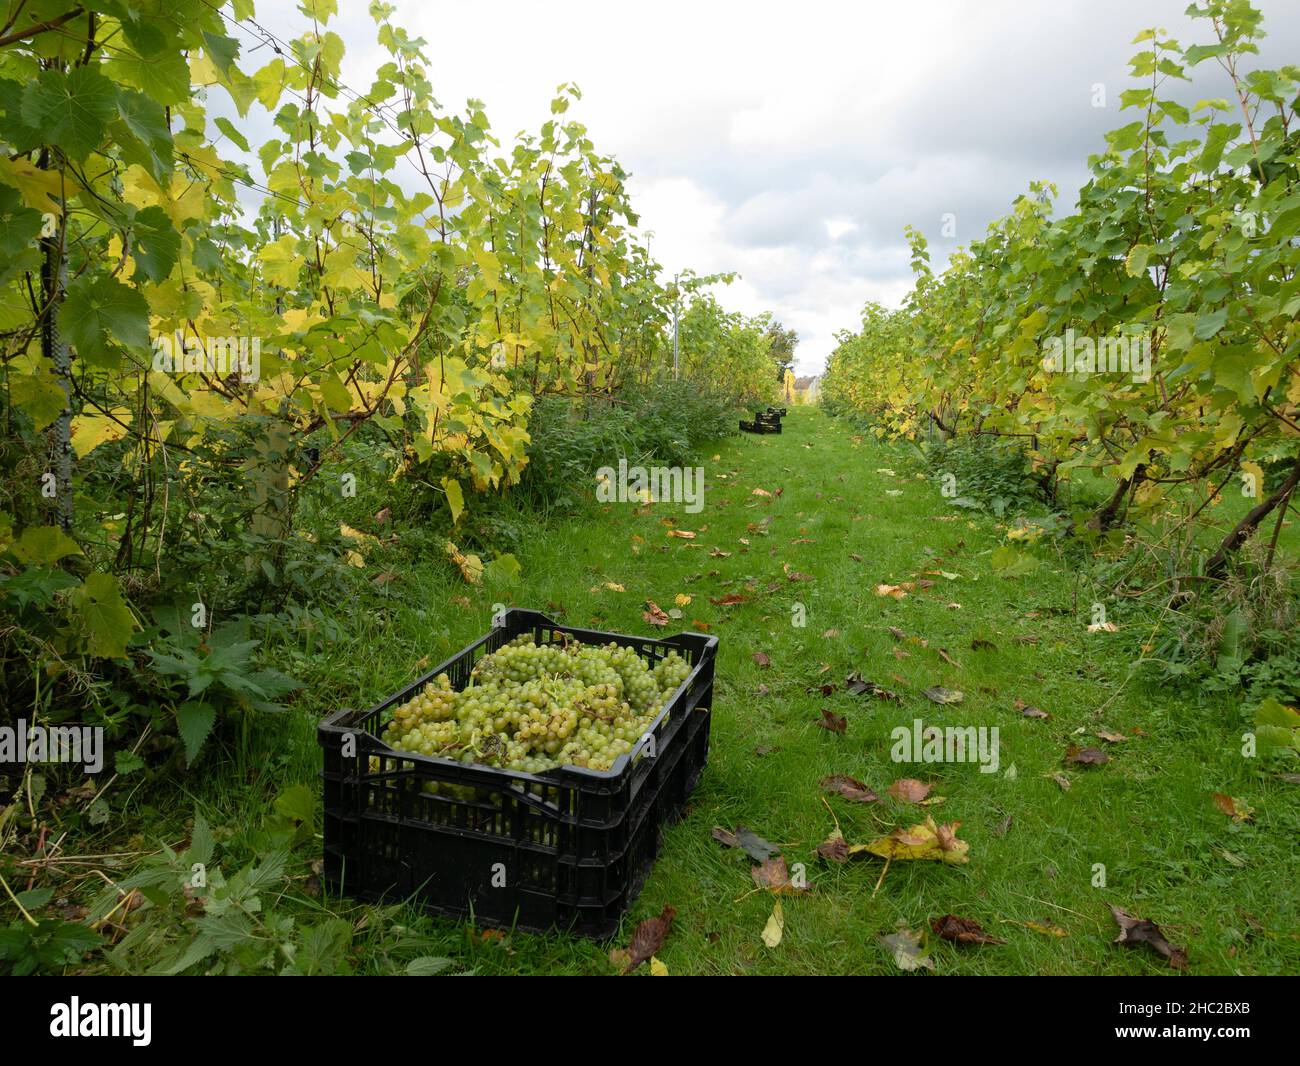 Caisses de raisins pendant la récolte du raisin au vignoble de Renishaw Hall, près de Sheffield, Angleterre, Royaume-Uni. Banque D'Images